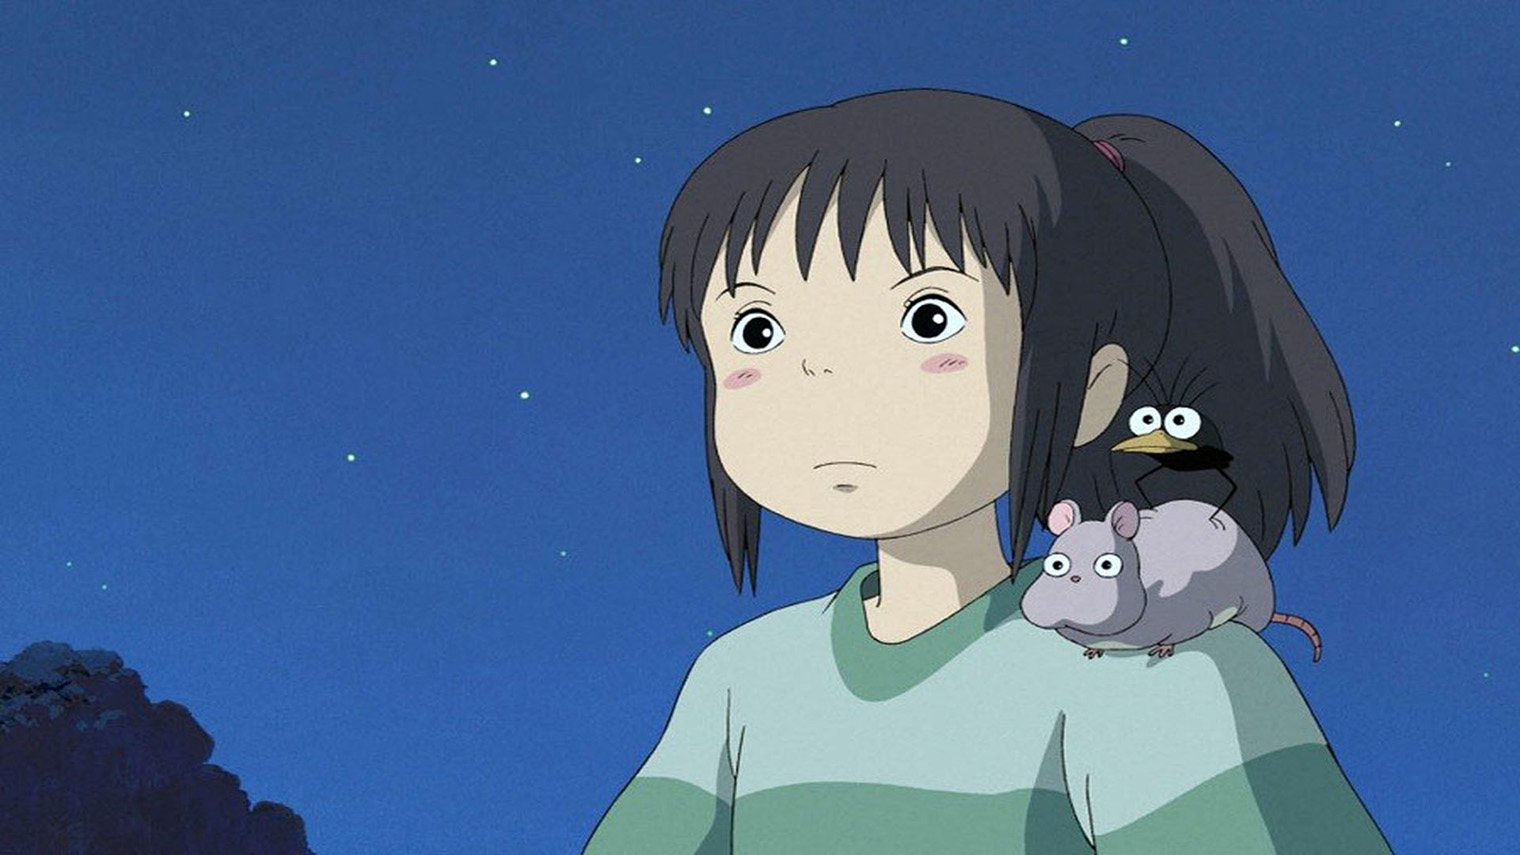 Тихиро по ходу истории переживает трансформацию из капризной до ответственной девочки. Источник: Studio Ghibli